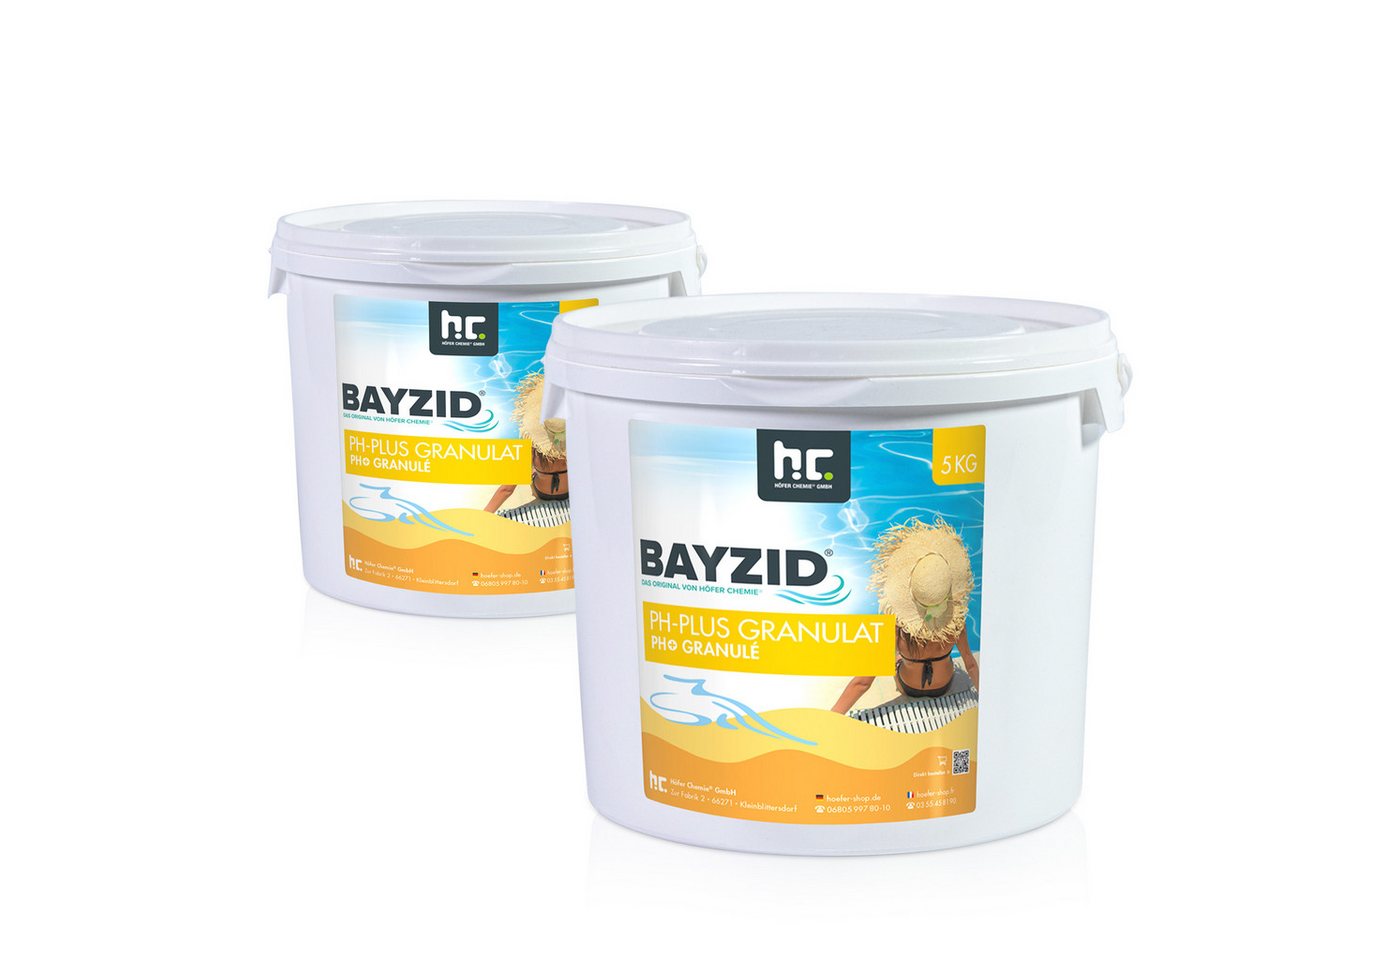 BAYZID Poolpflege 2x 5 kg BAYZID® pH Plus Granulat für den Pool von BAYZID